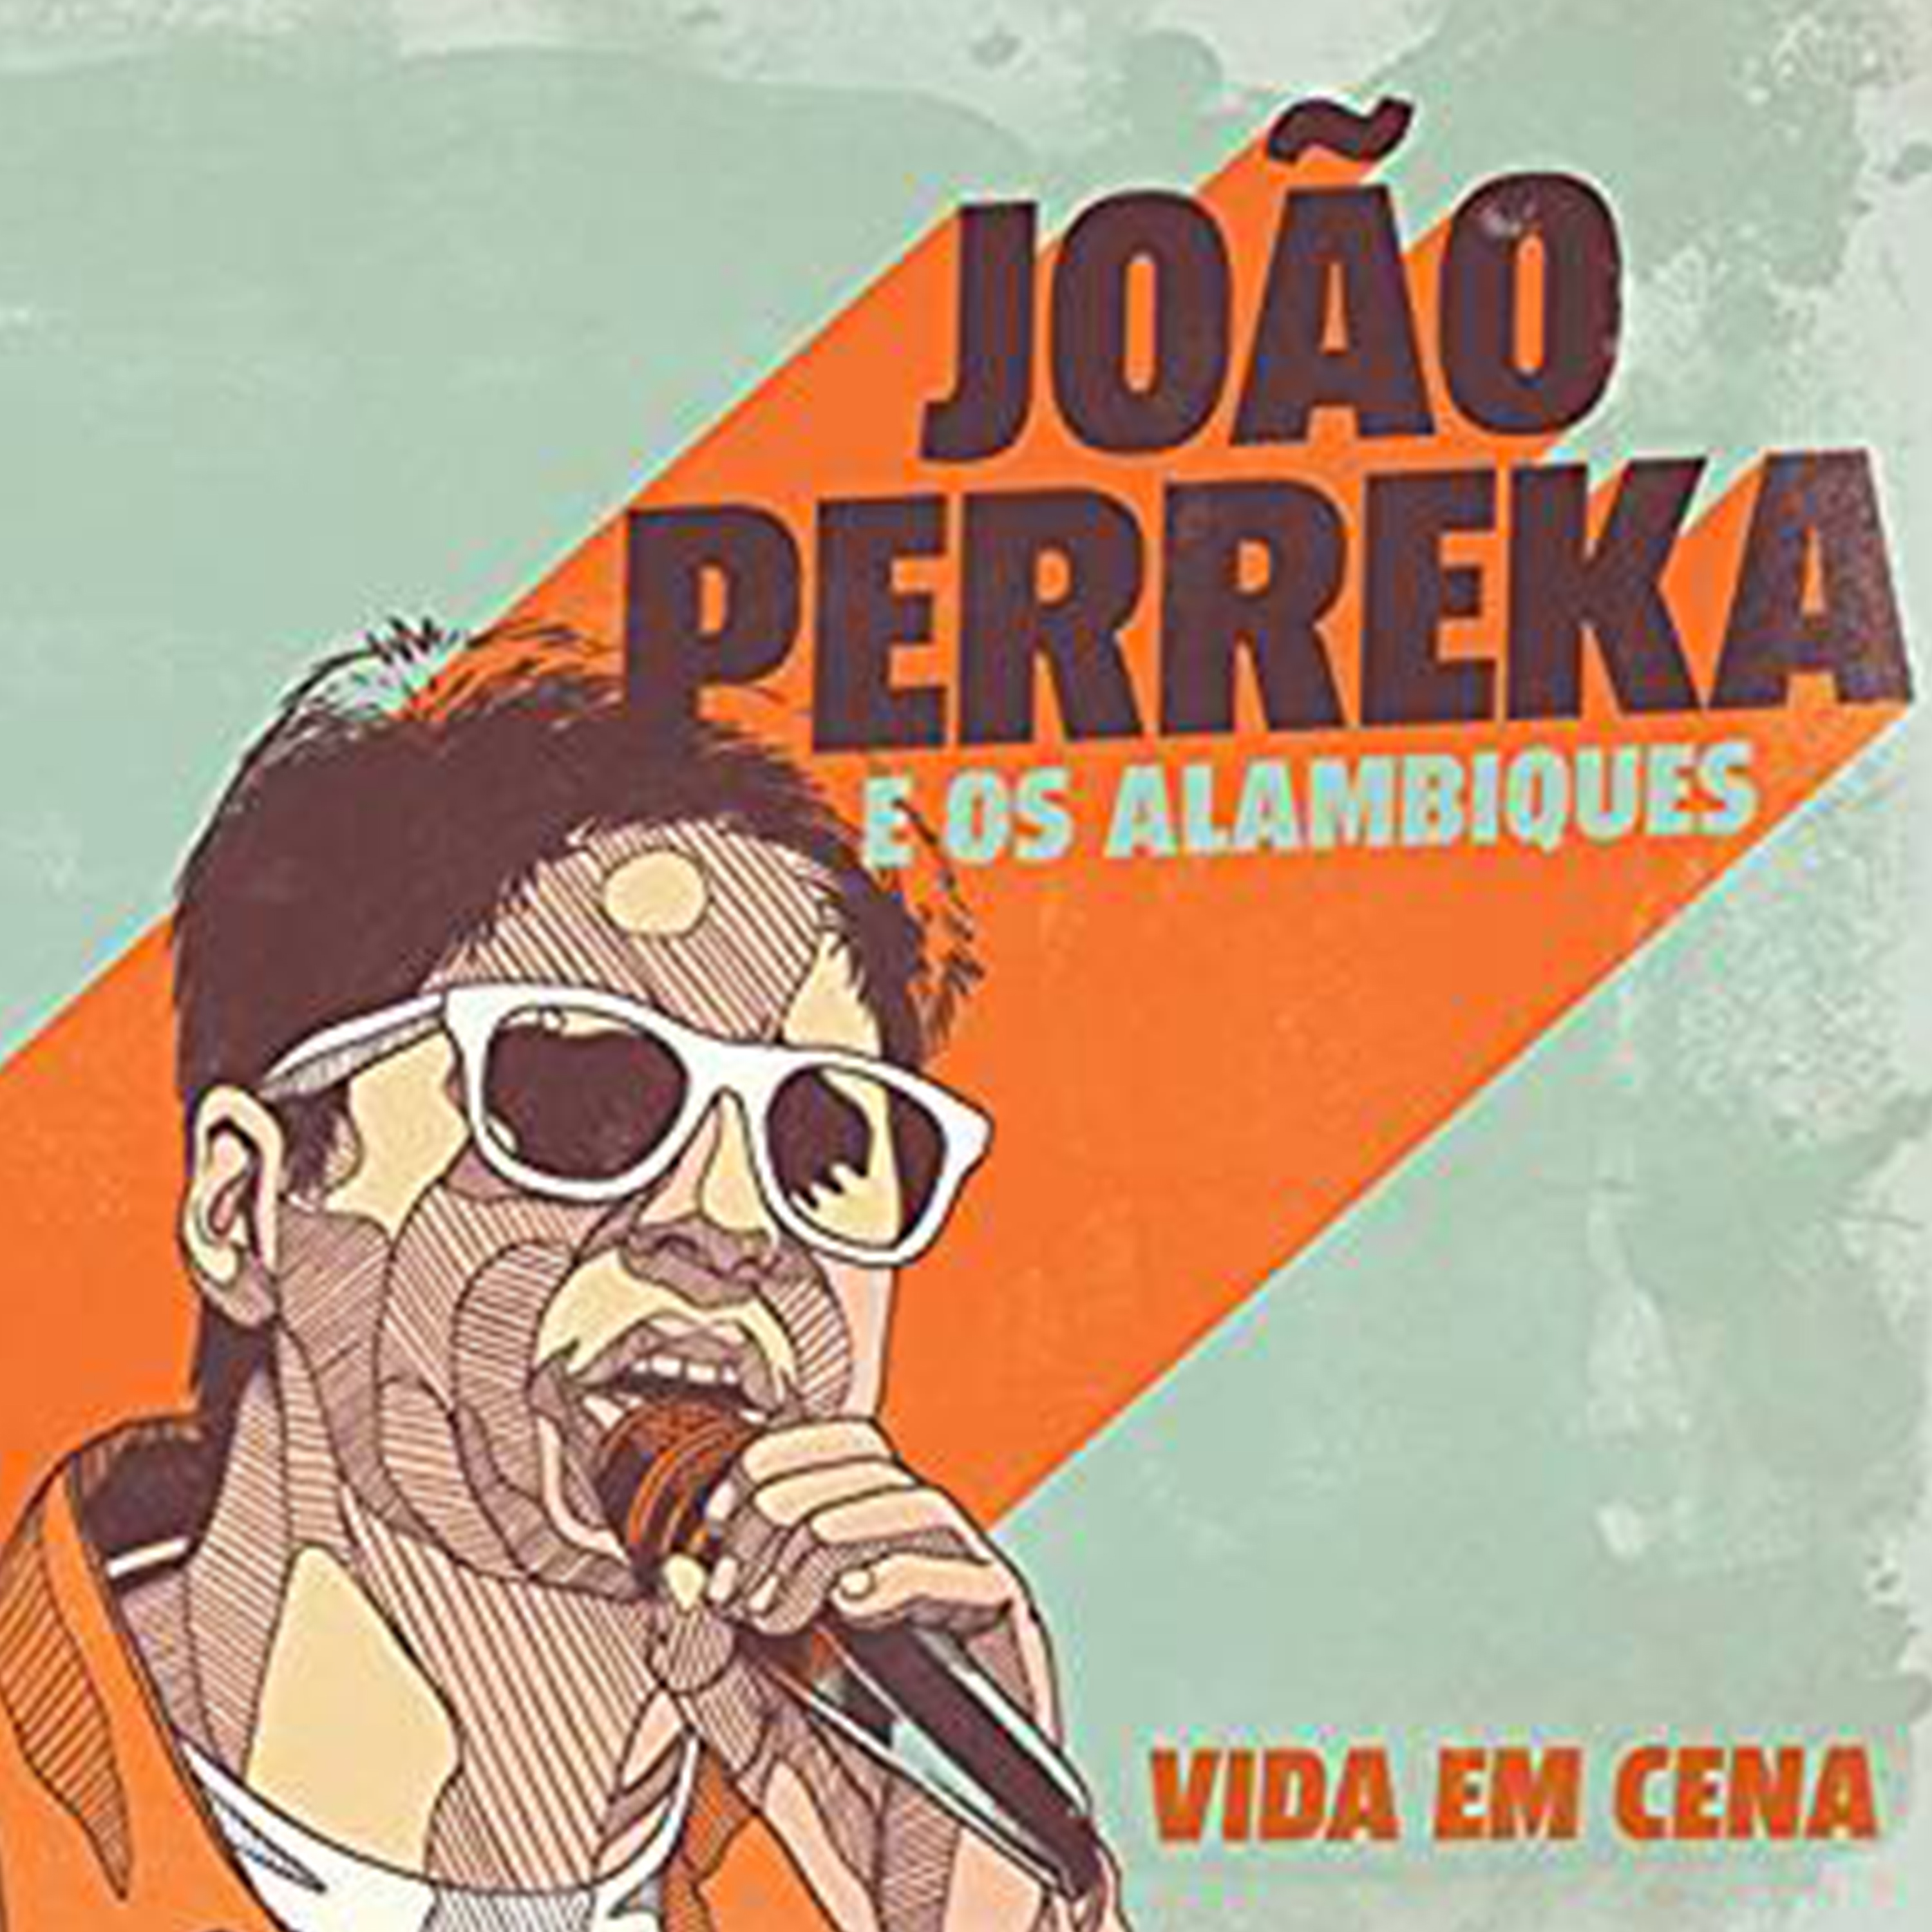 João Perreka & Os Alambiques